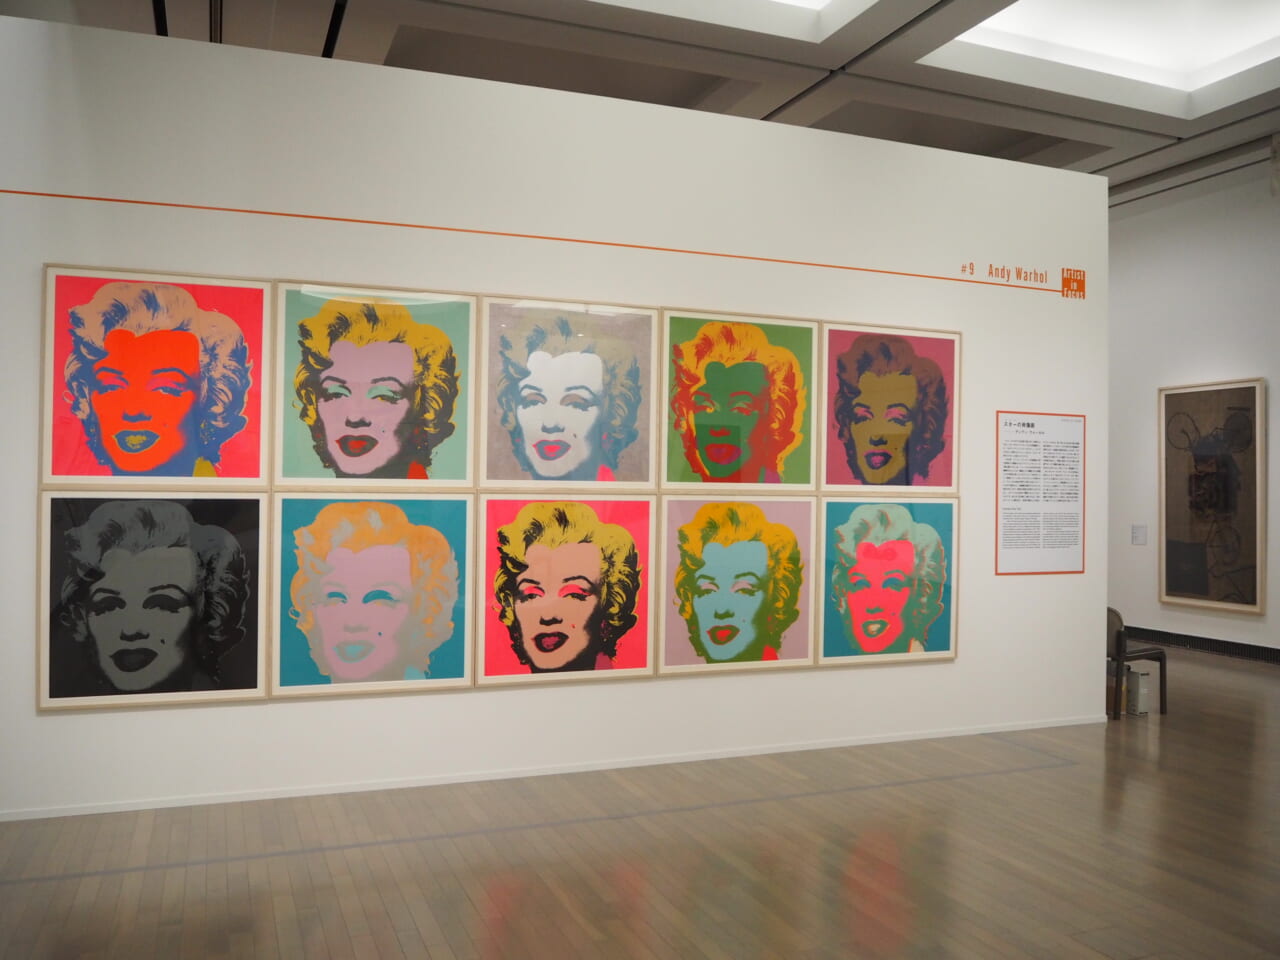 アンディ・ウォーホル《マリリン》1967年　富山県美術館蔵
© 2022 The Andy Warhol Foundation for the Visual Arts, Inc. / Licensed by ARS, New York & JASPAR, Tokyo
G2788